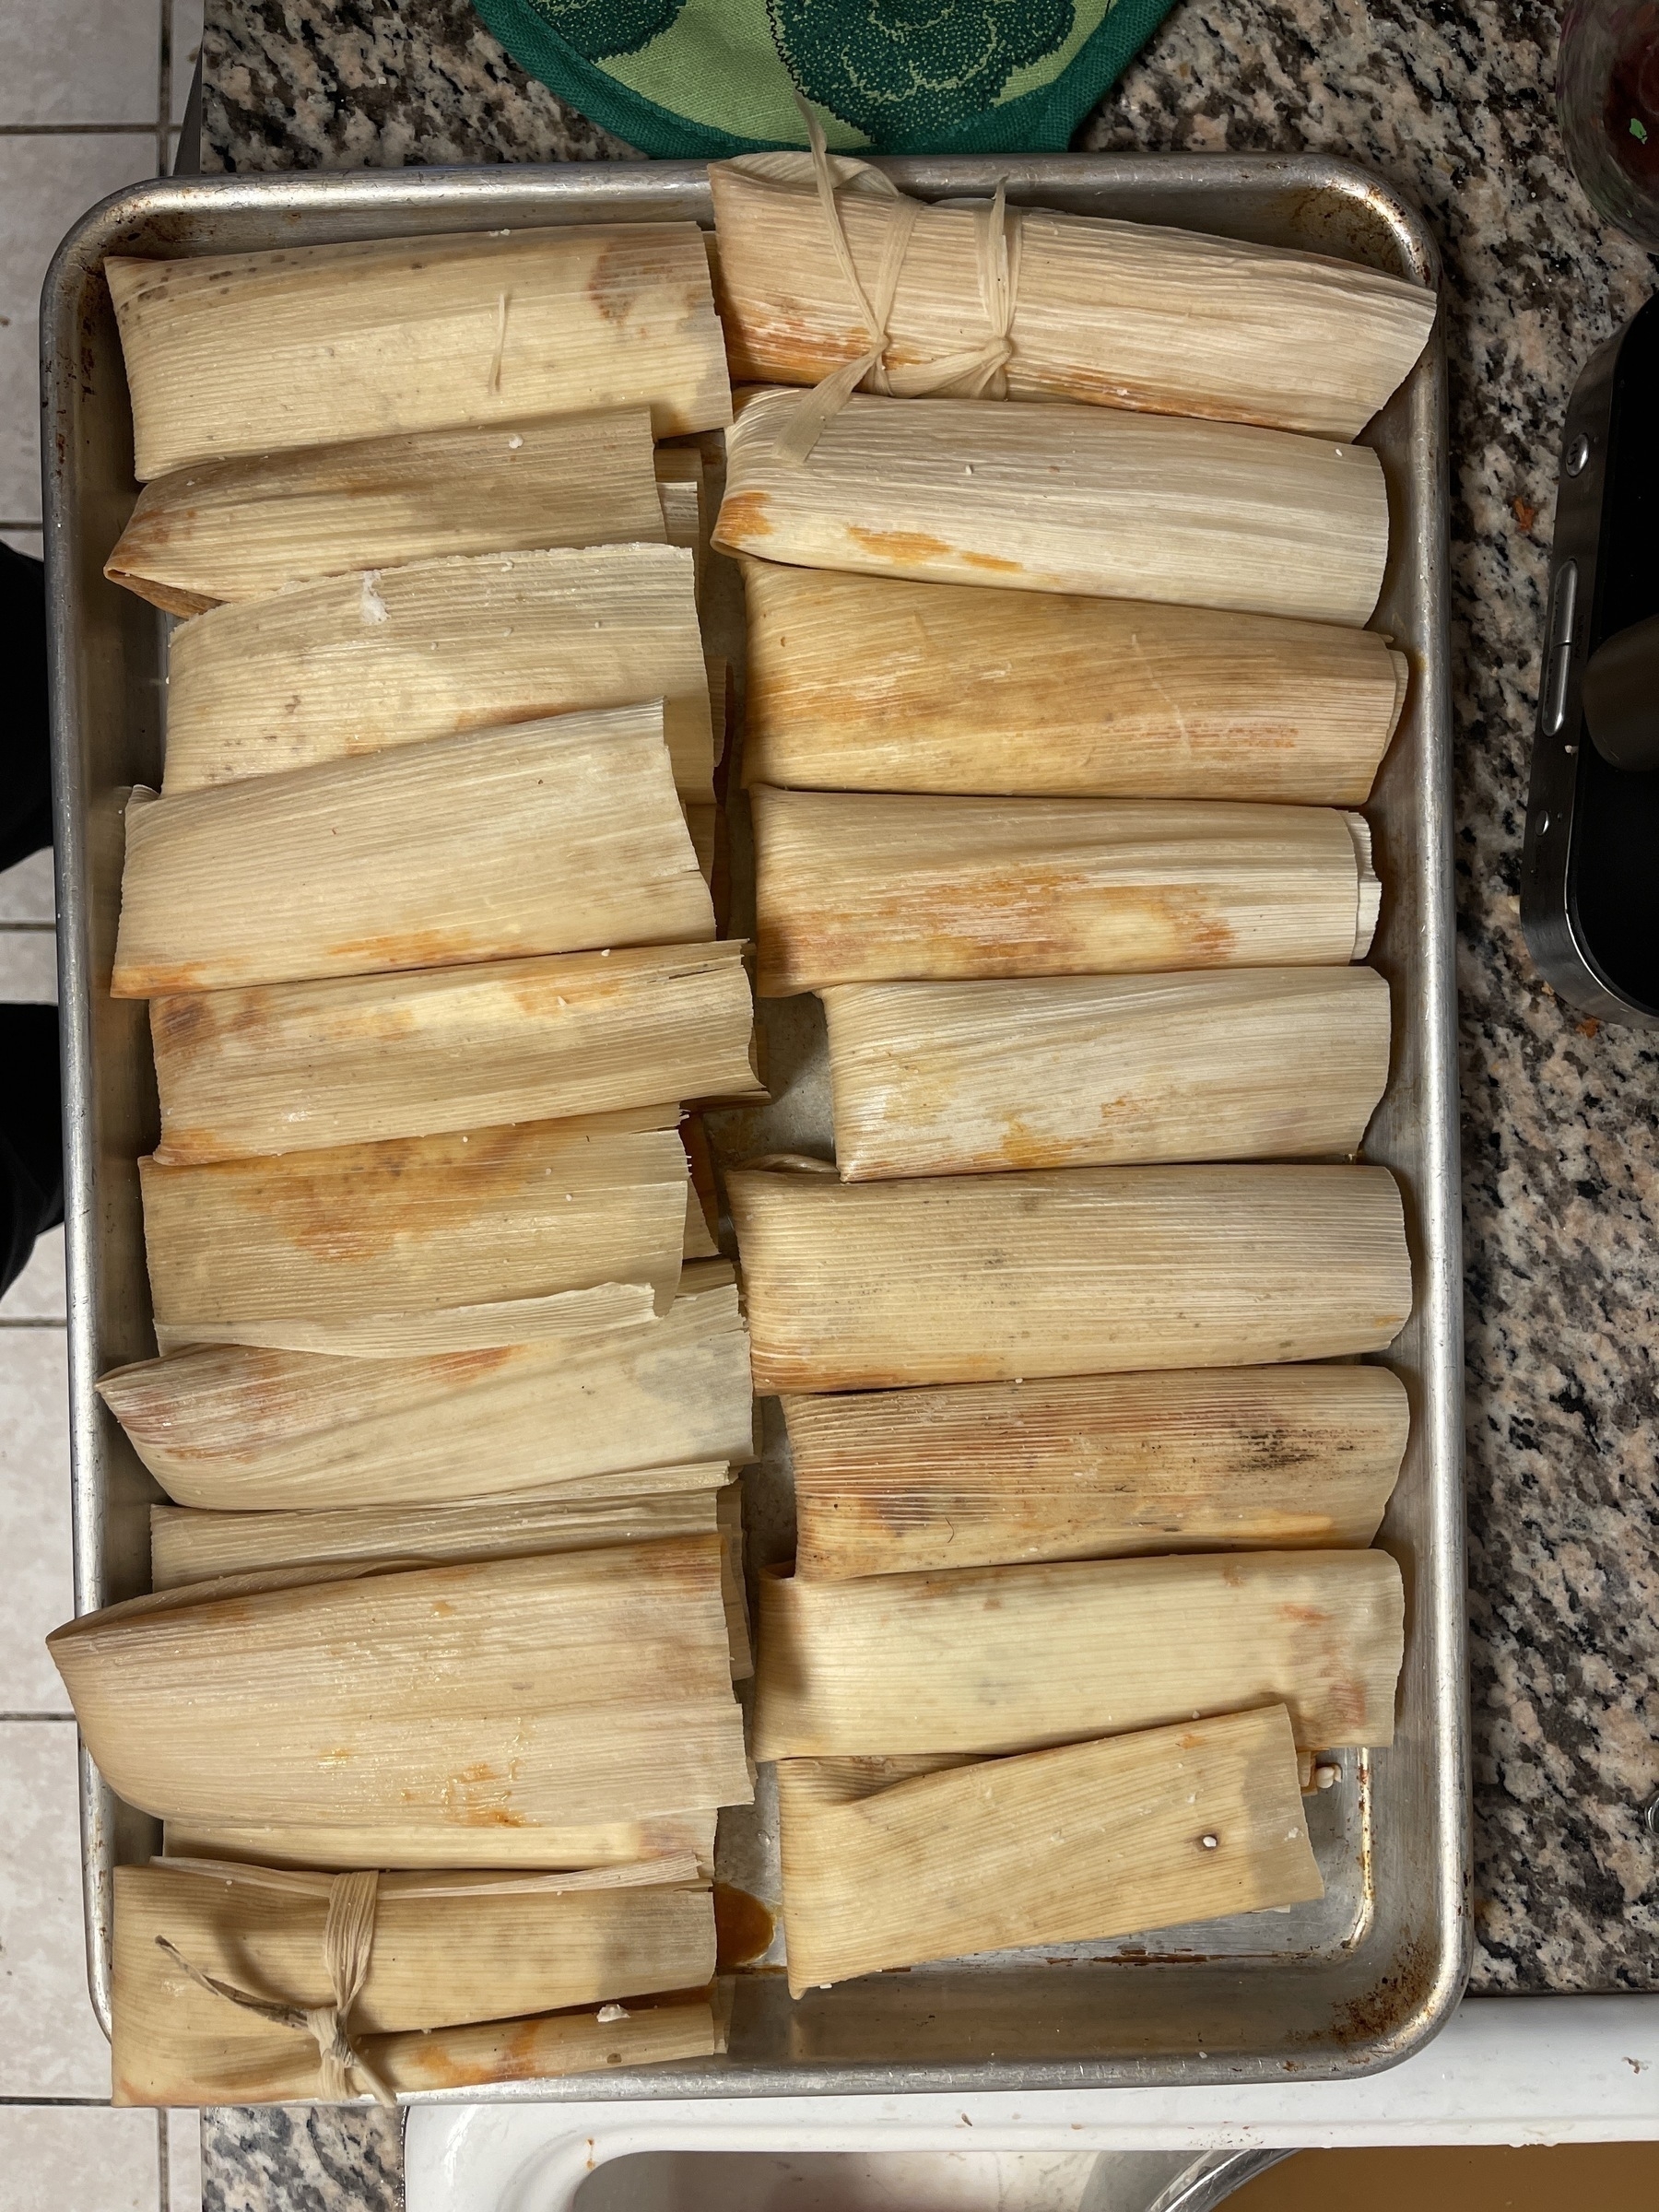 Baking sheet full of tamales